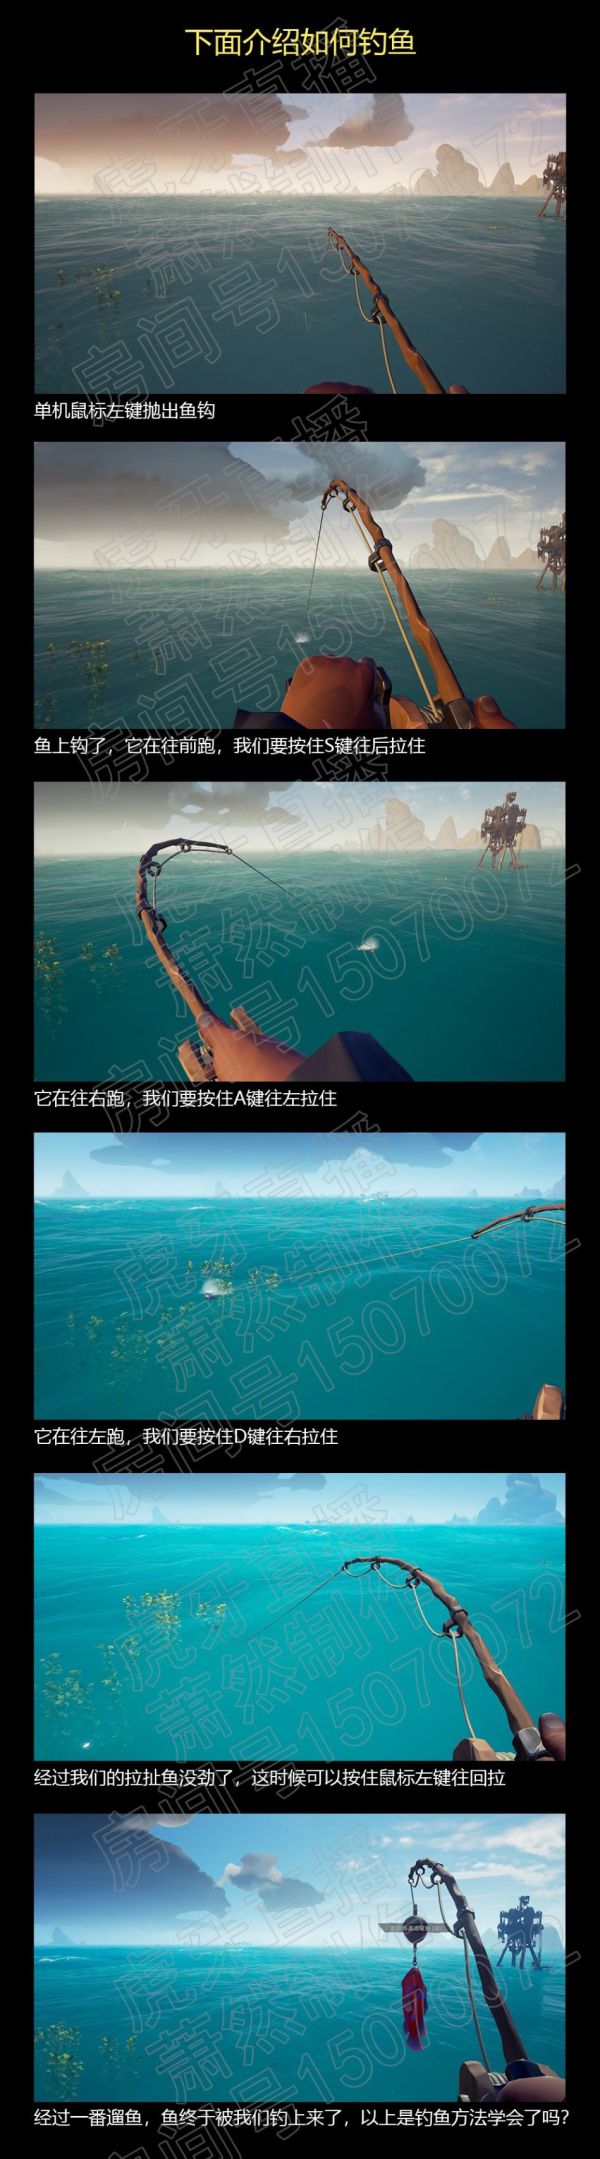 盗贼之海全鱼类图鉴图片